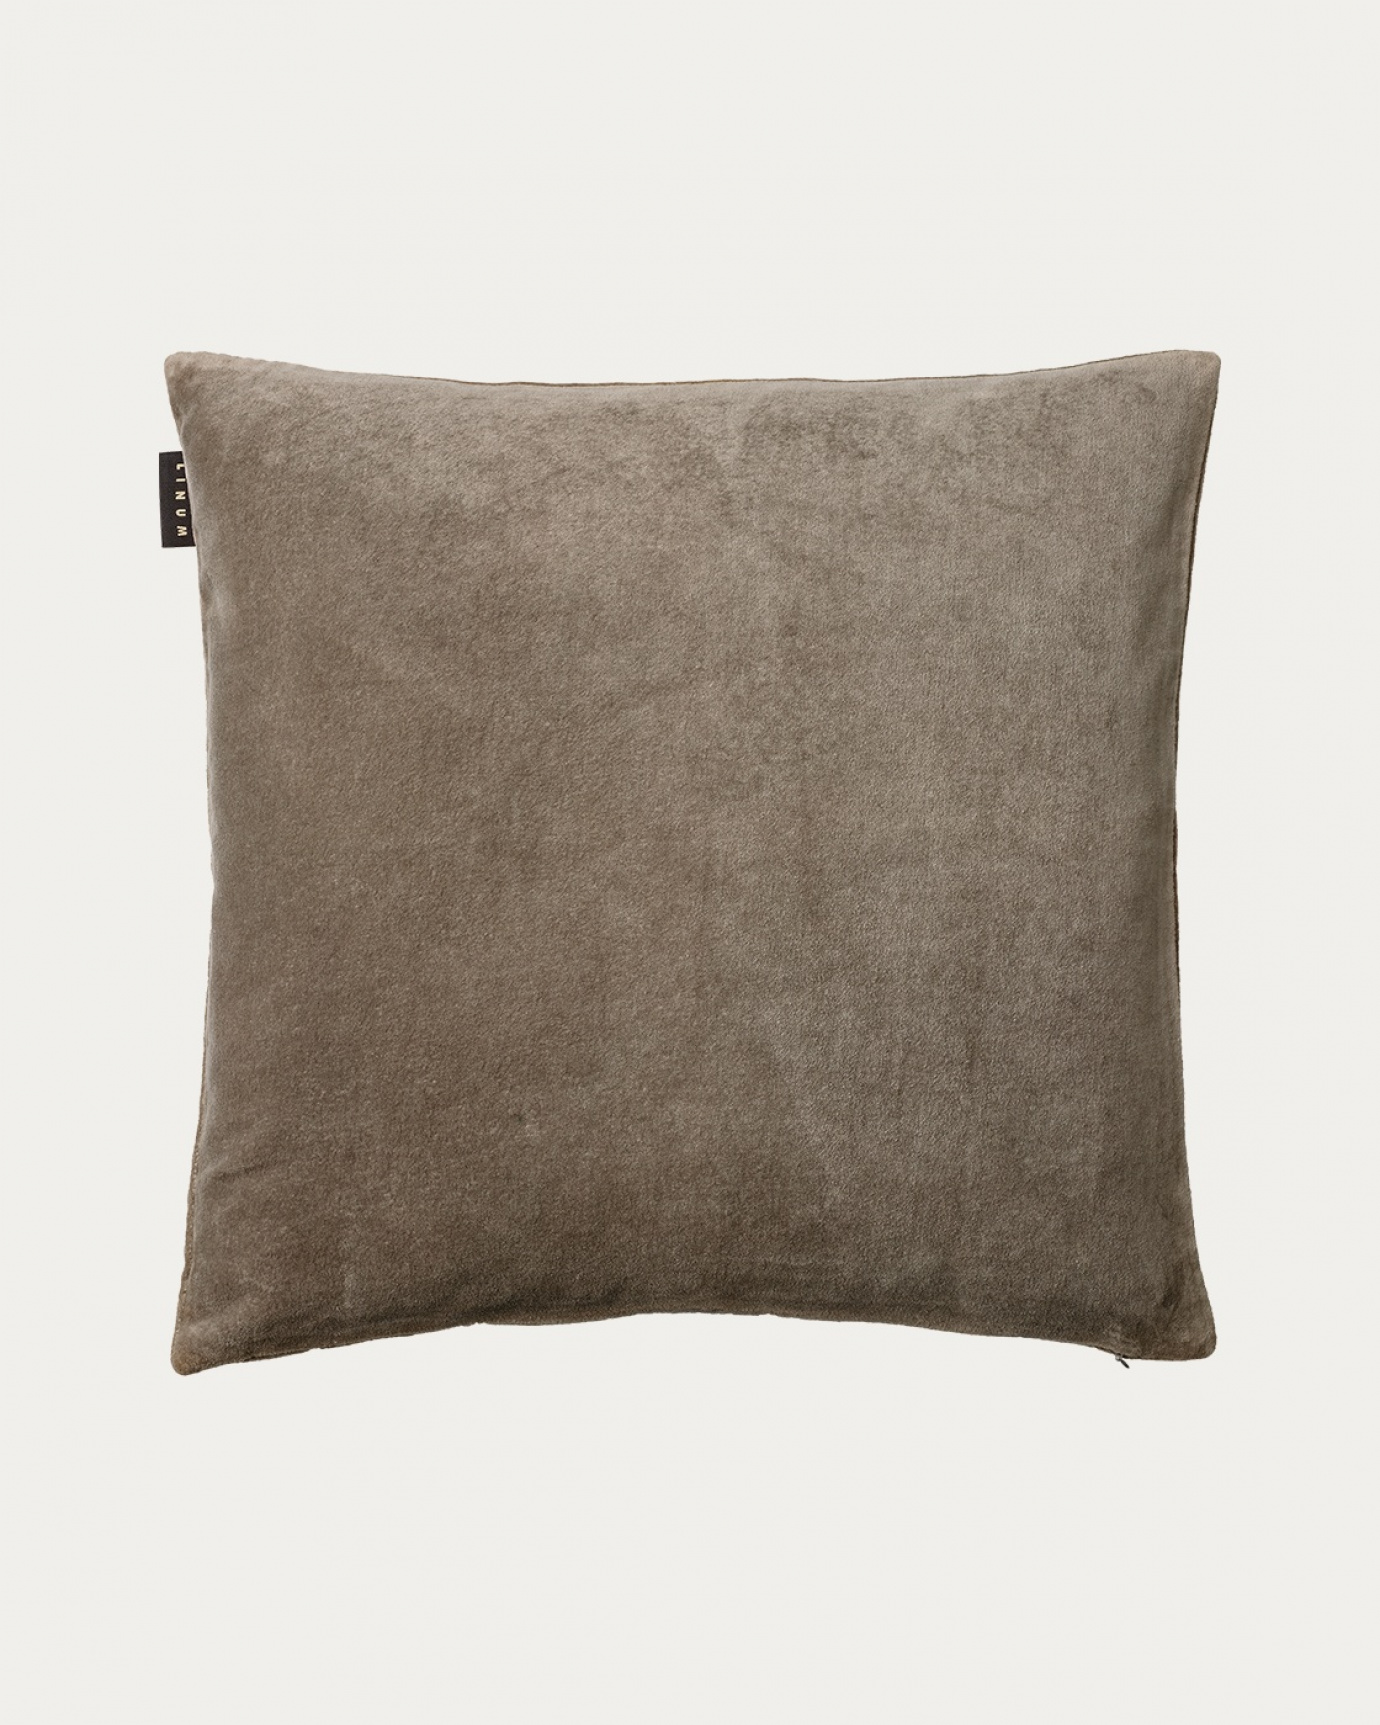 Produktbild maulwurfbraun PAOLO Kissenhülle aus weichem Baumwollsamt von LINUM DESIGN. Größe 50x50 cm.